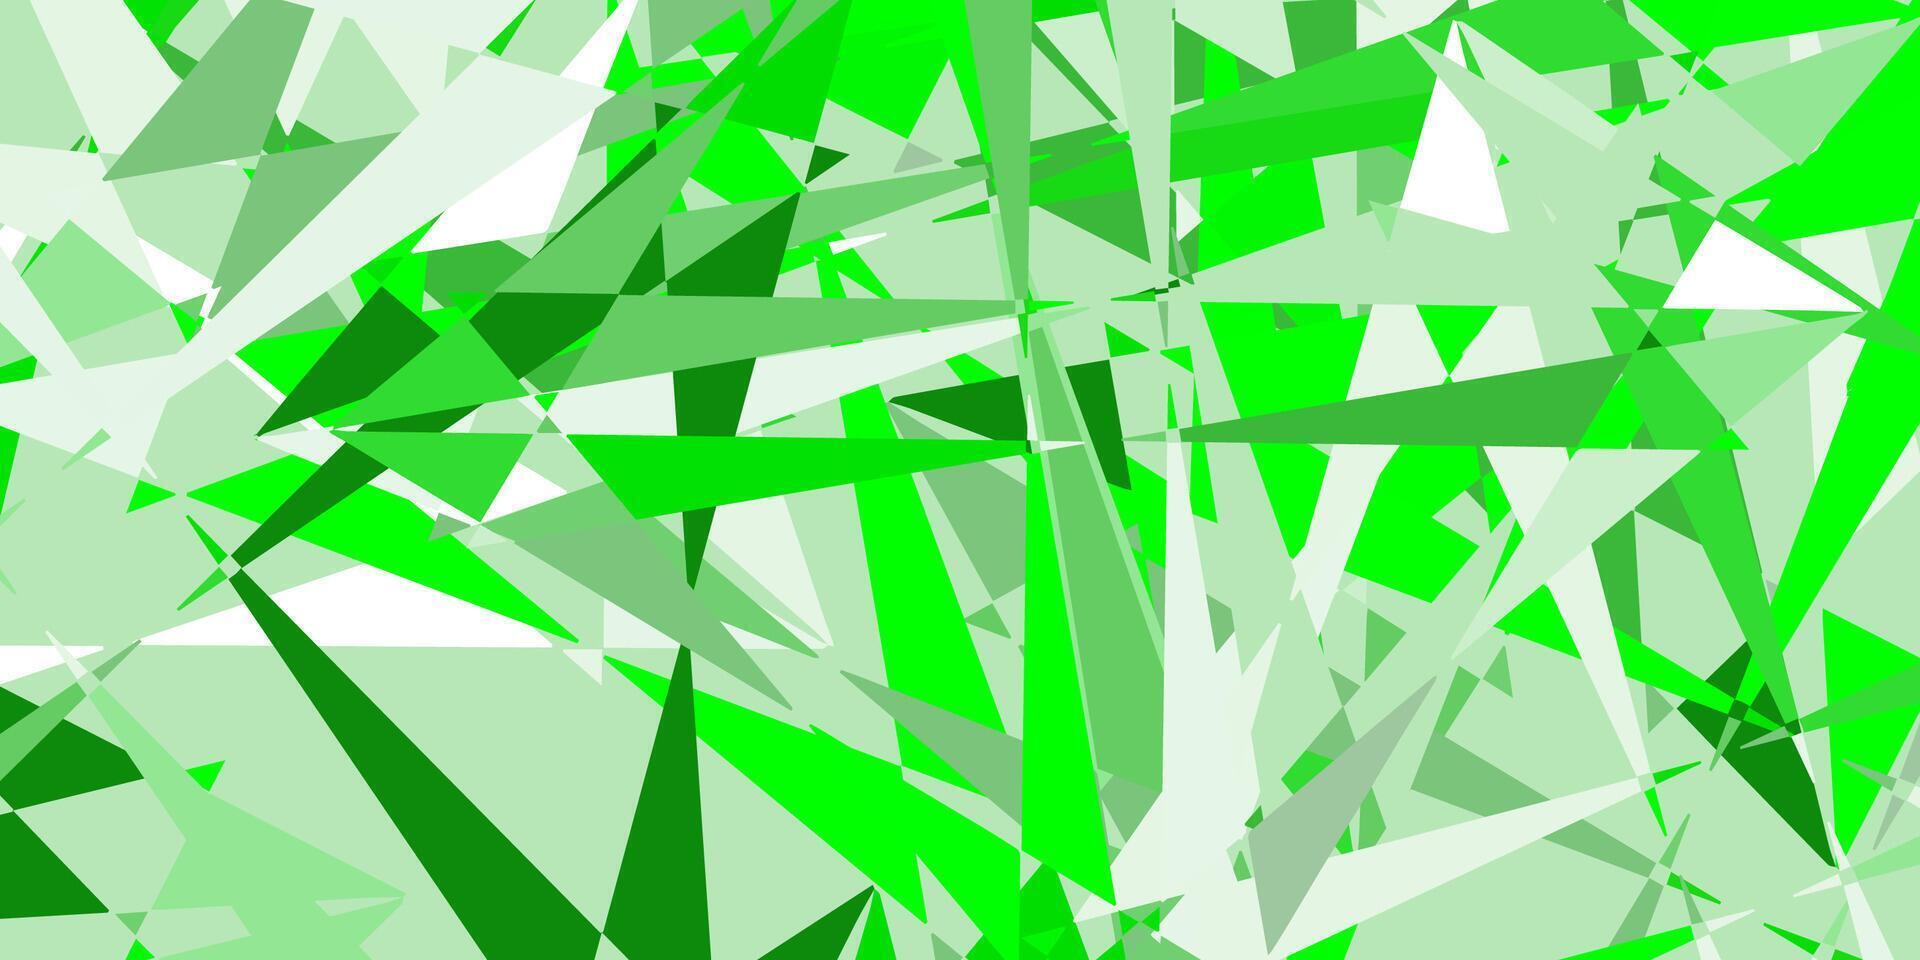 texture de vecteur vert clair, jaune avec des triangles aléatoires.